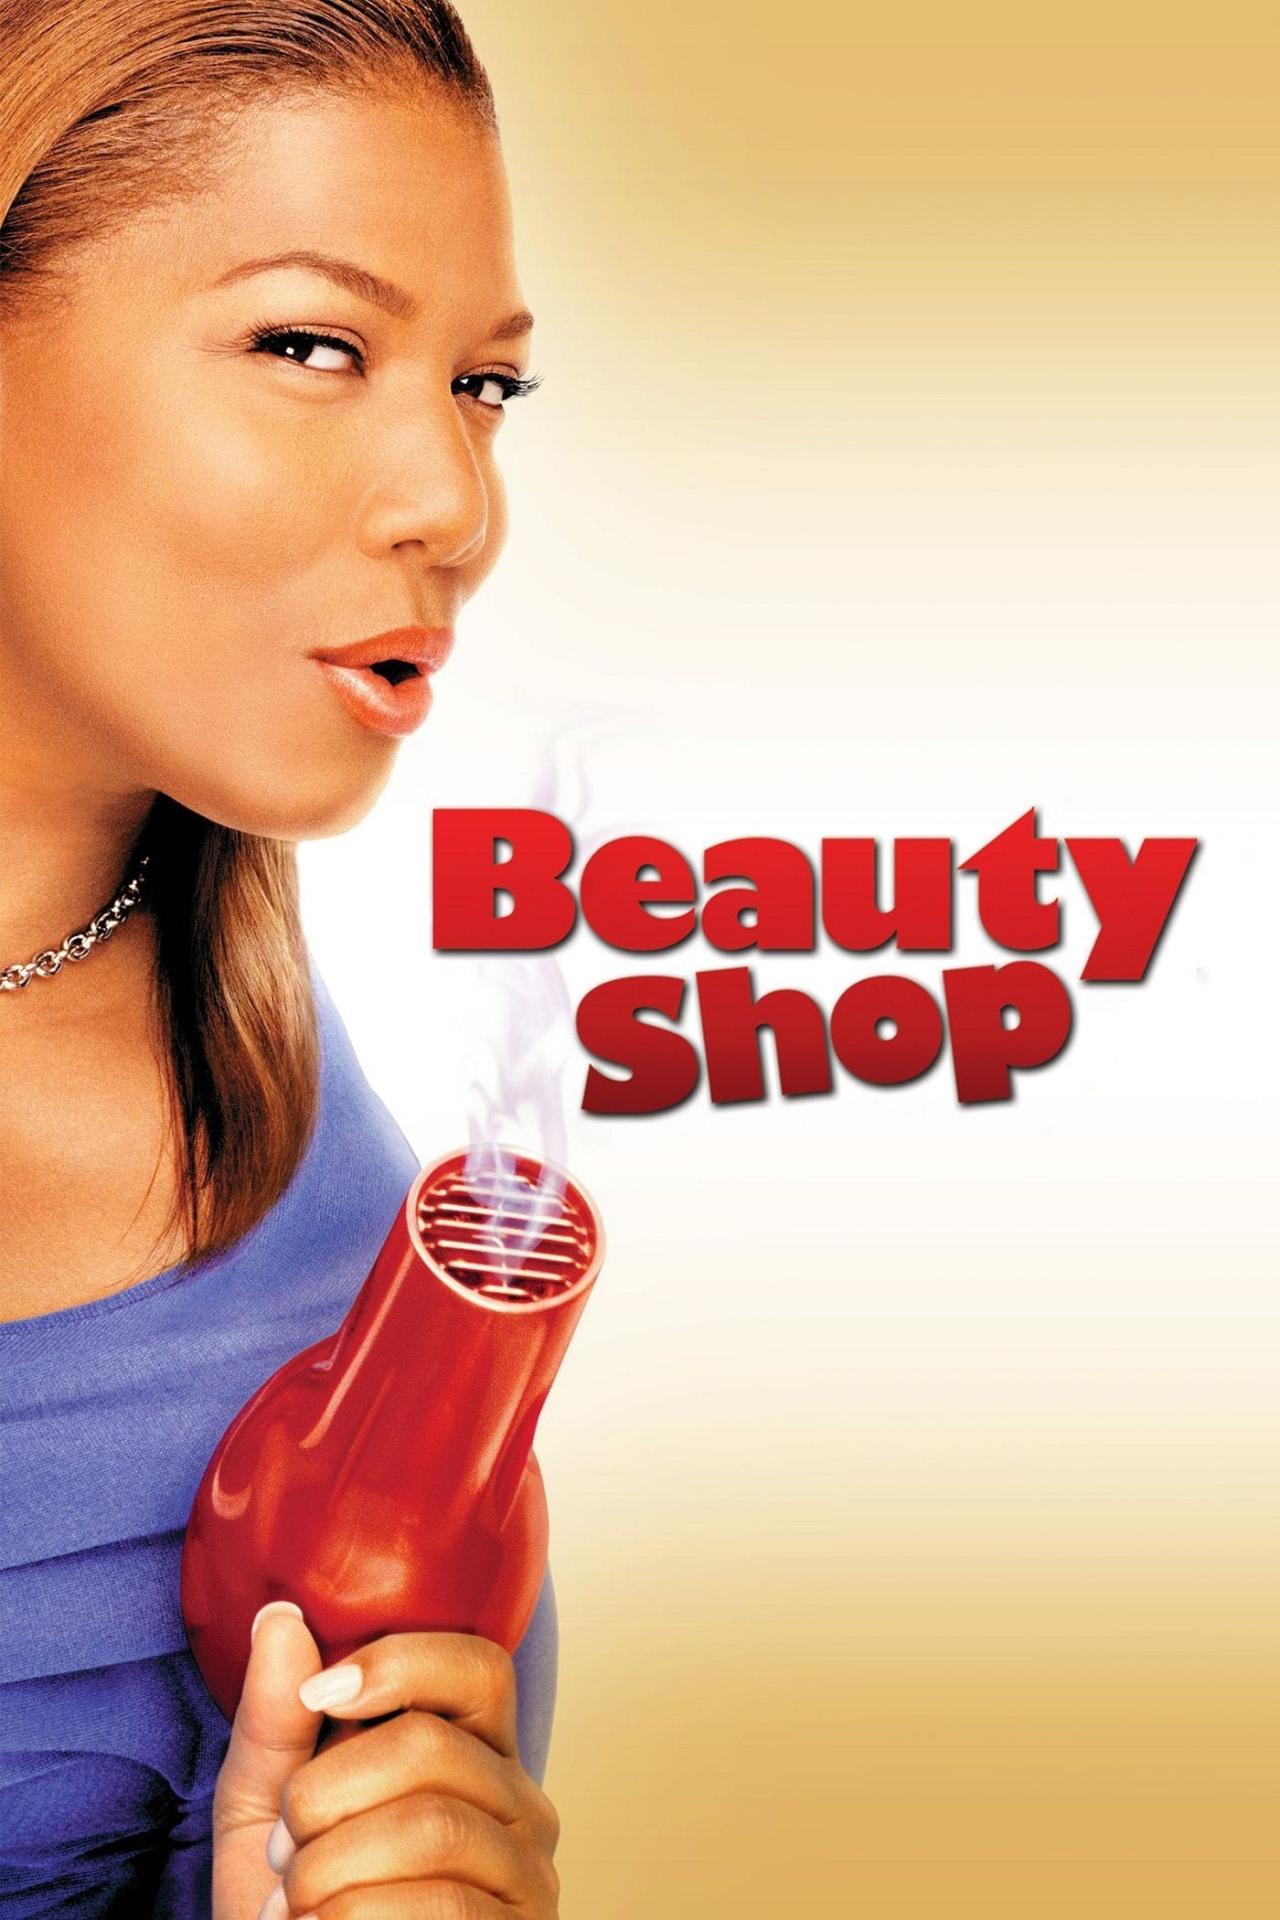 Beauty shop est-il disponible sur Netflix ou autre ?